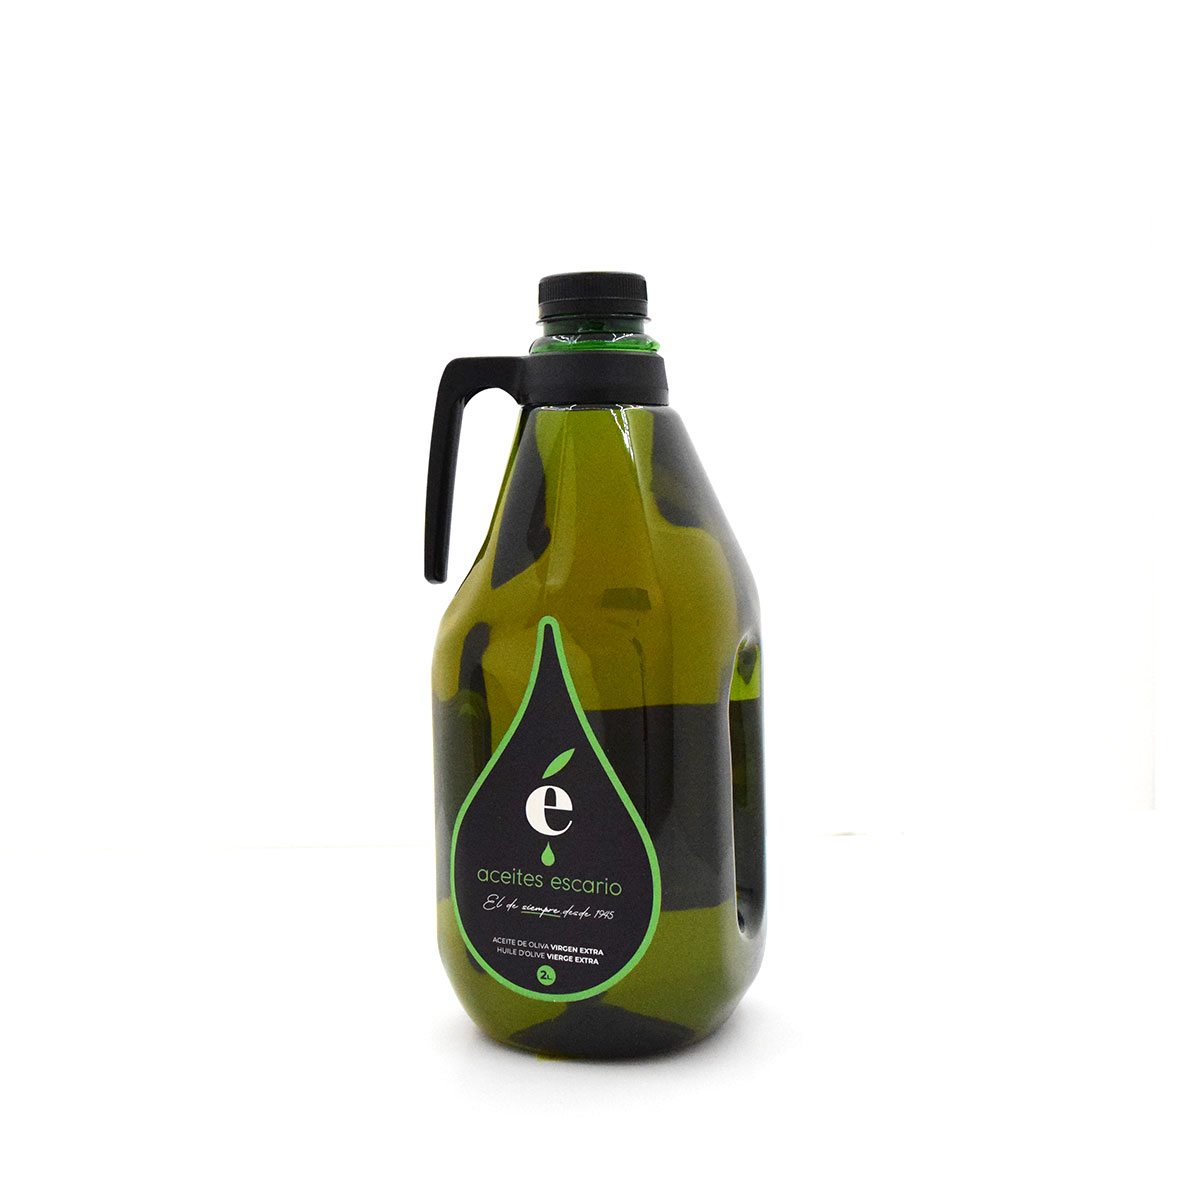 Botella de aceite de oliva Virgen Extra Escario coupage 2 litros